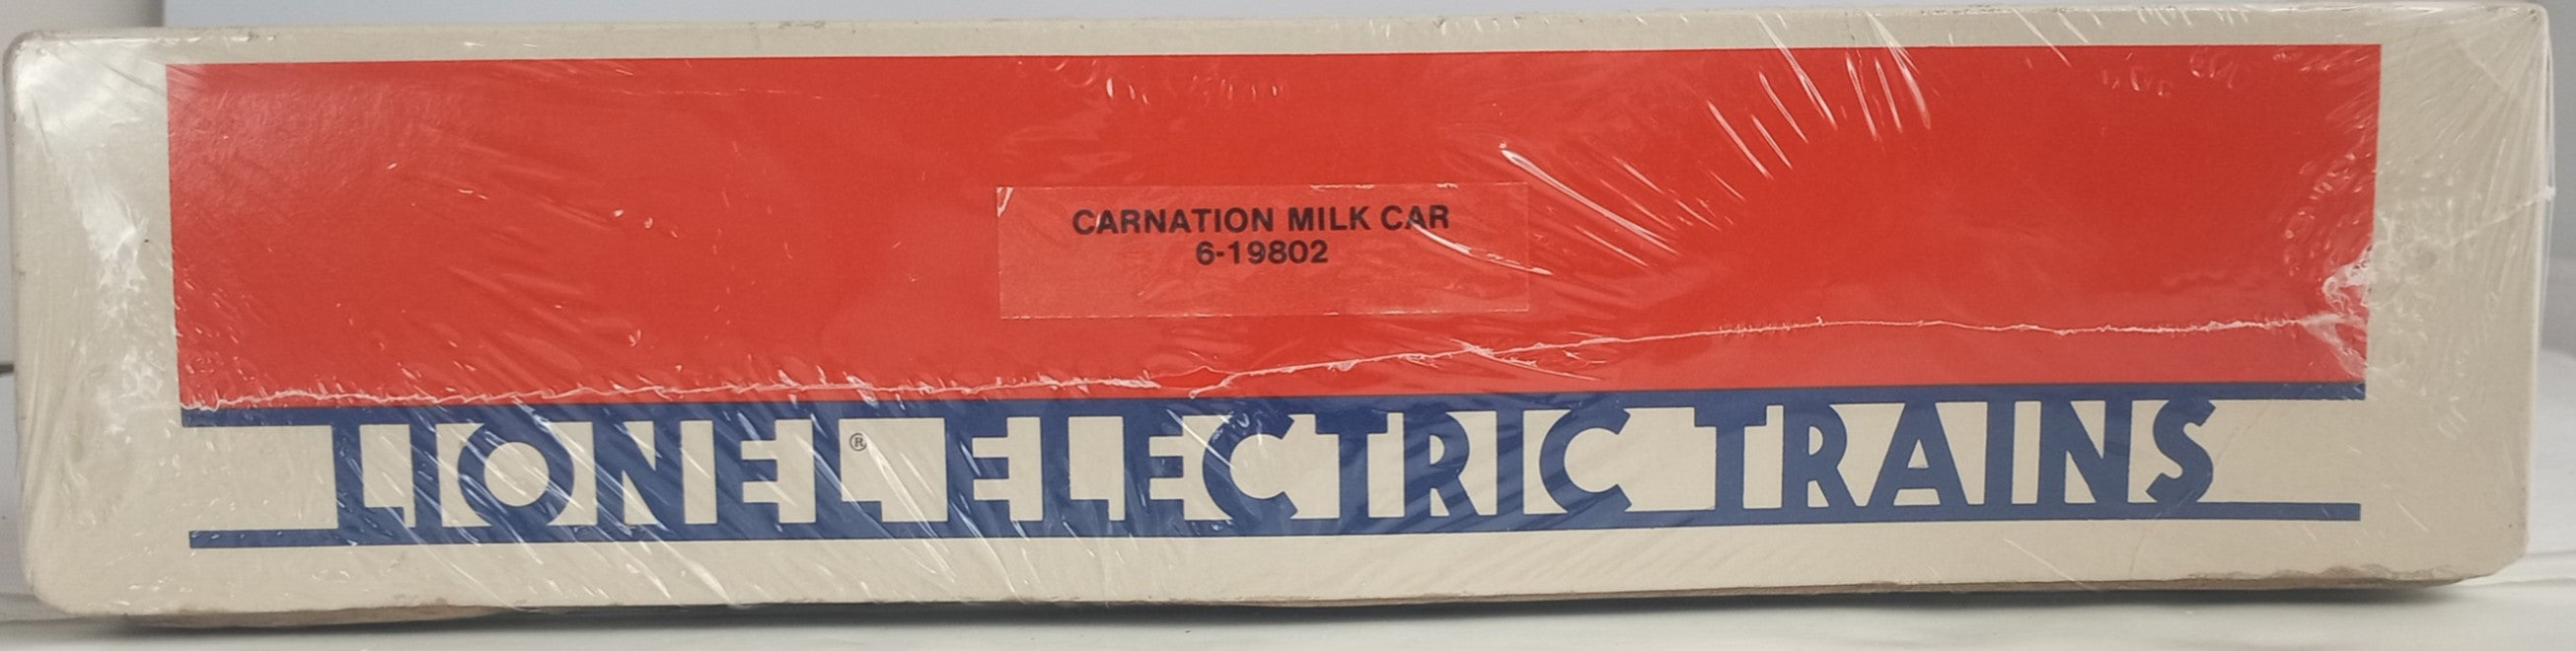 O Carnation Milk Car w/ Platform